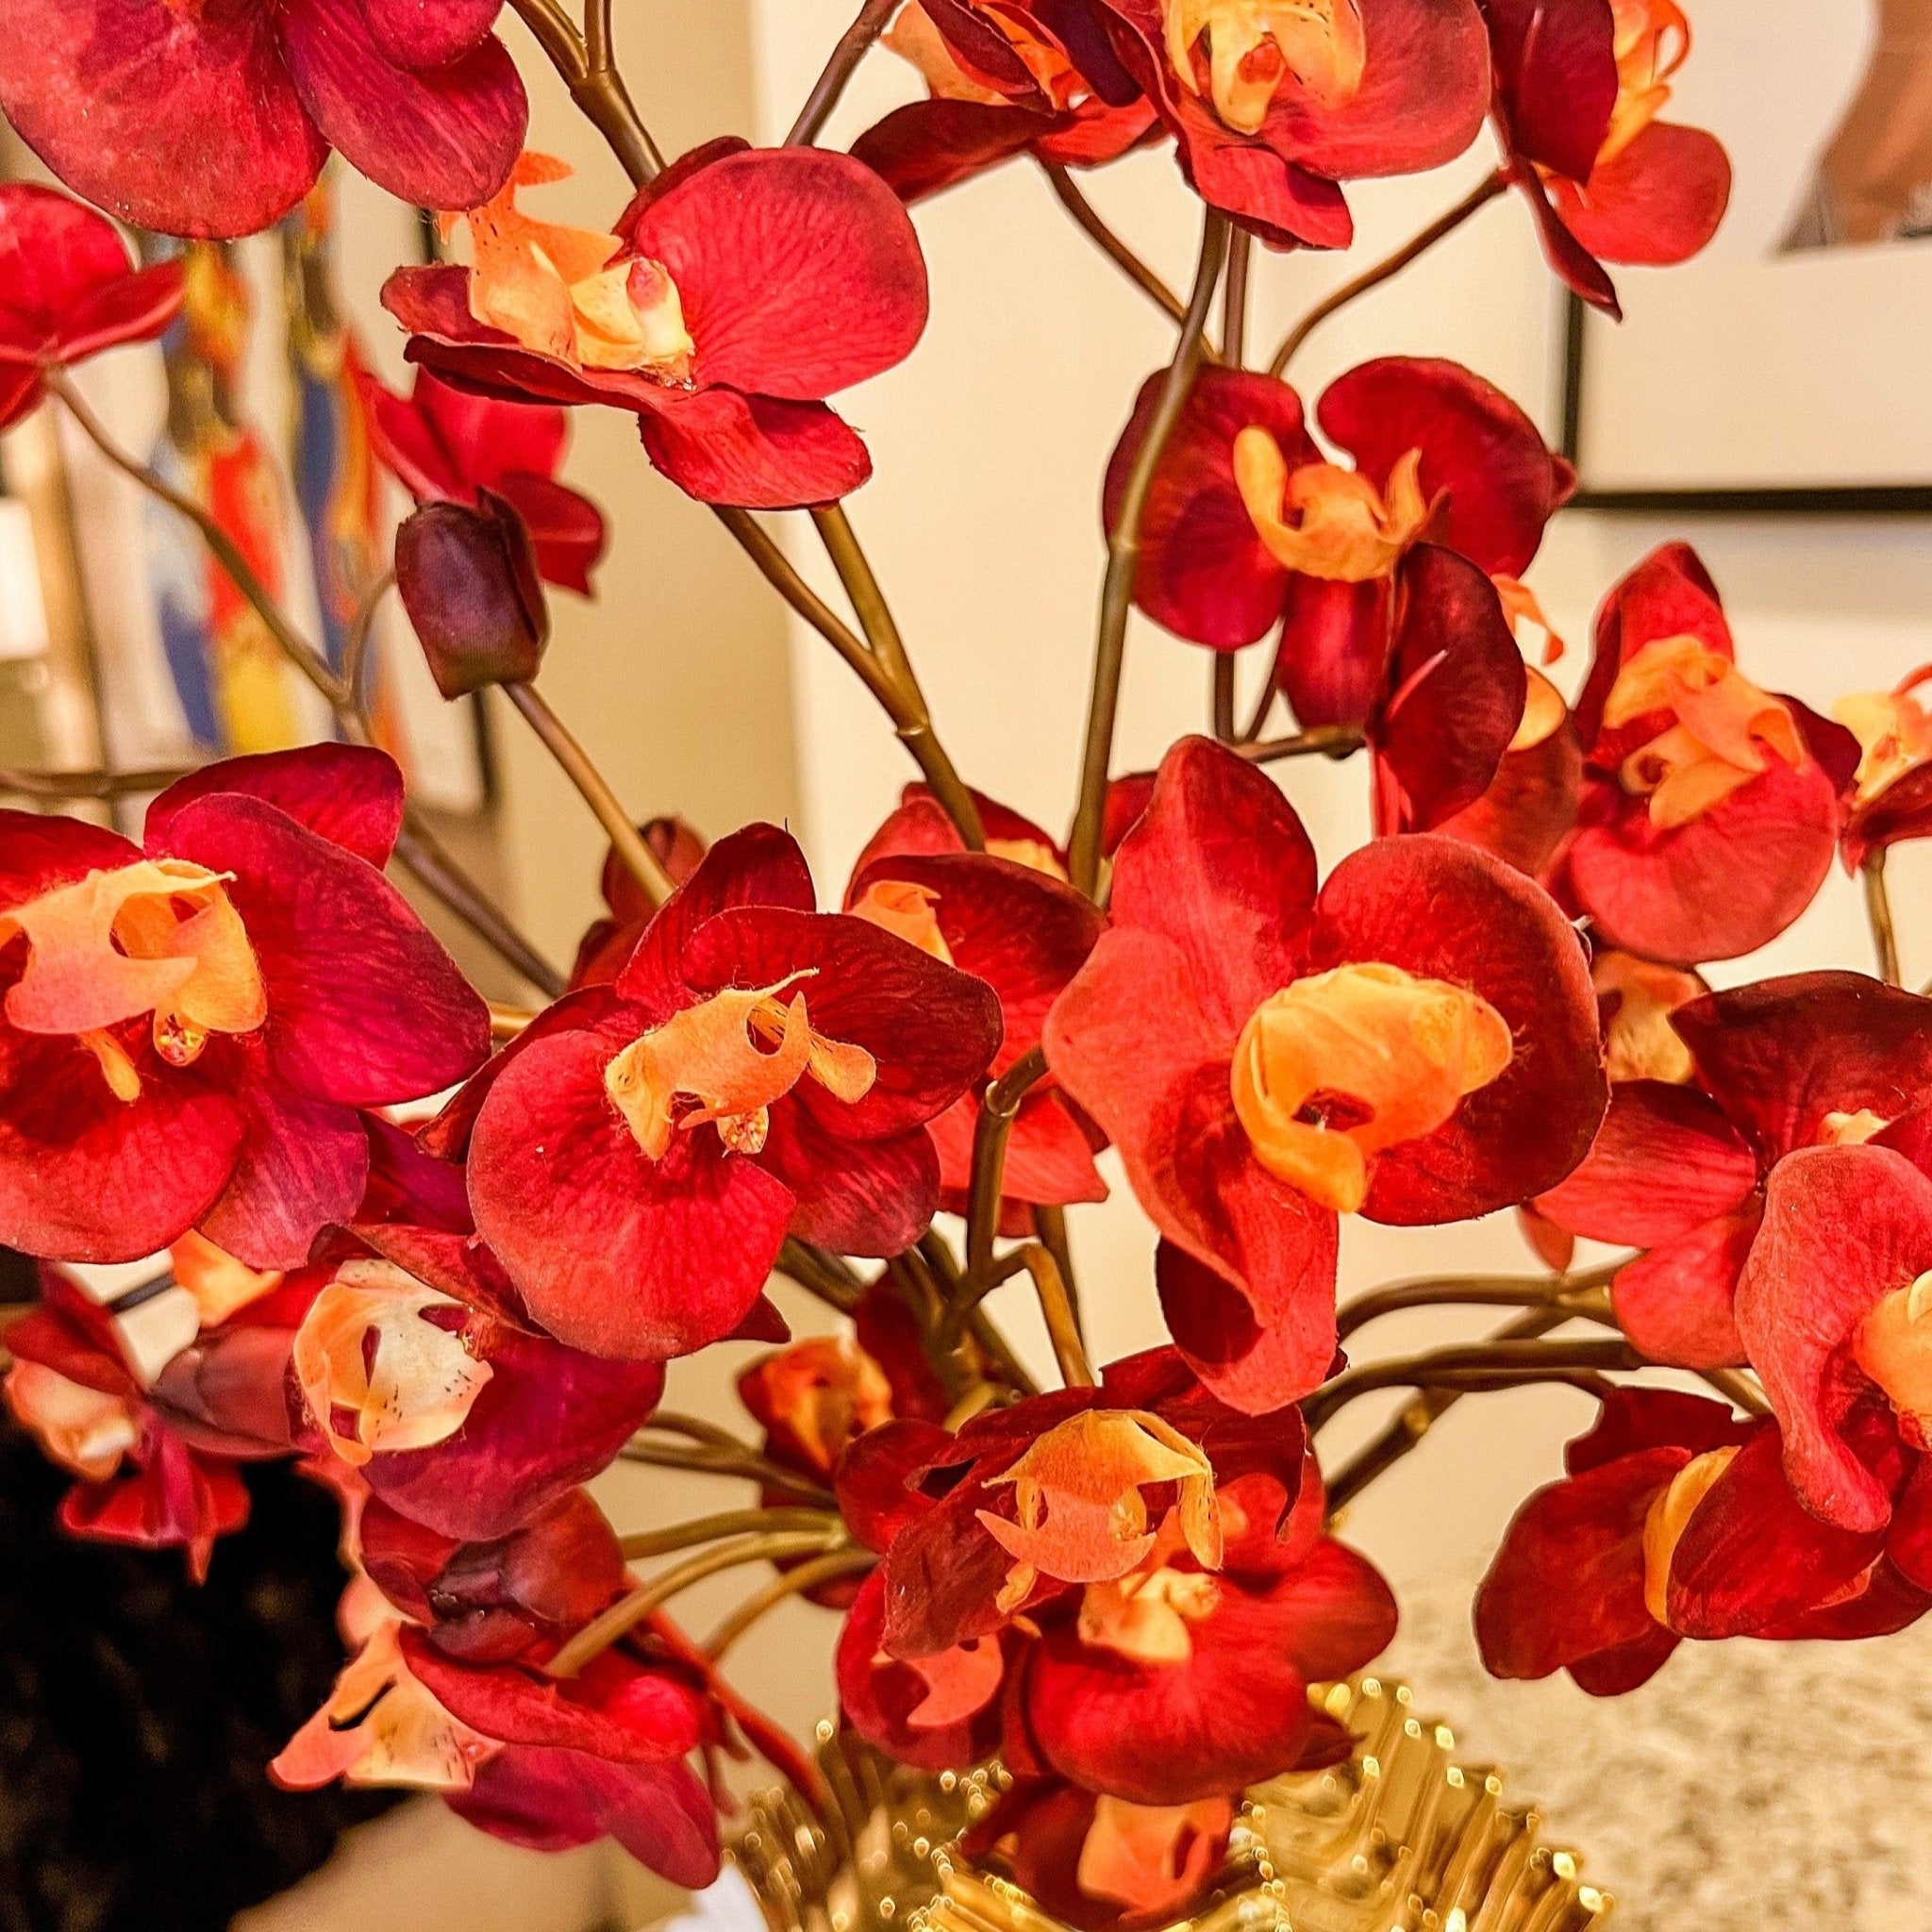 Burgundy Phalaenopsis Orchid (25") | Red Flower | Artificial Flowers | Faux Flowers | Faux Floral Arrangement - DiamondValeDecor